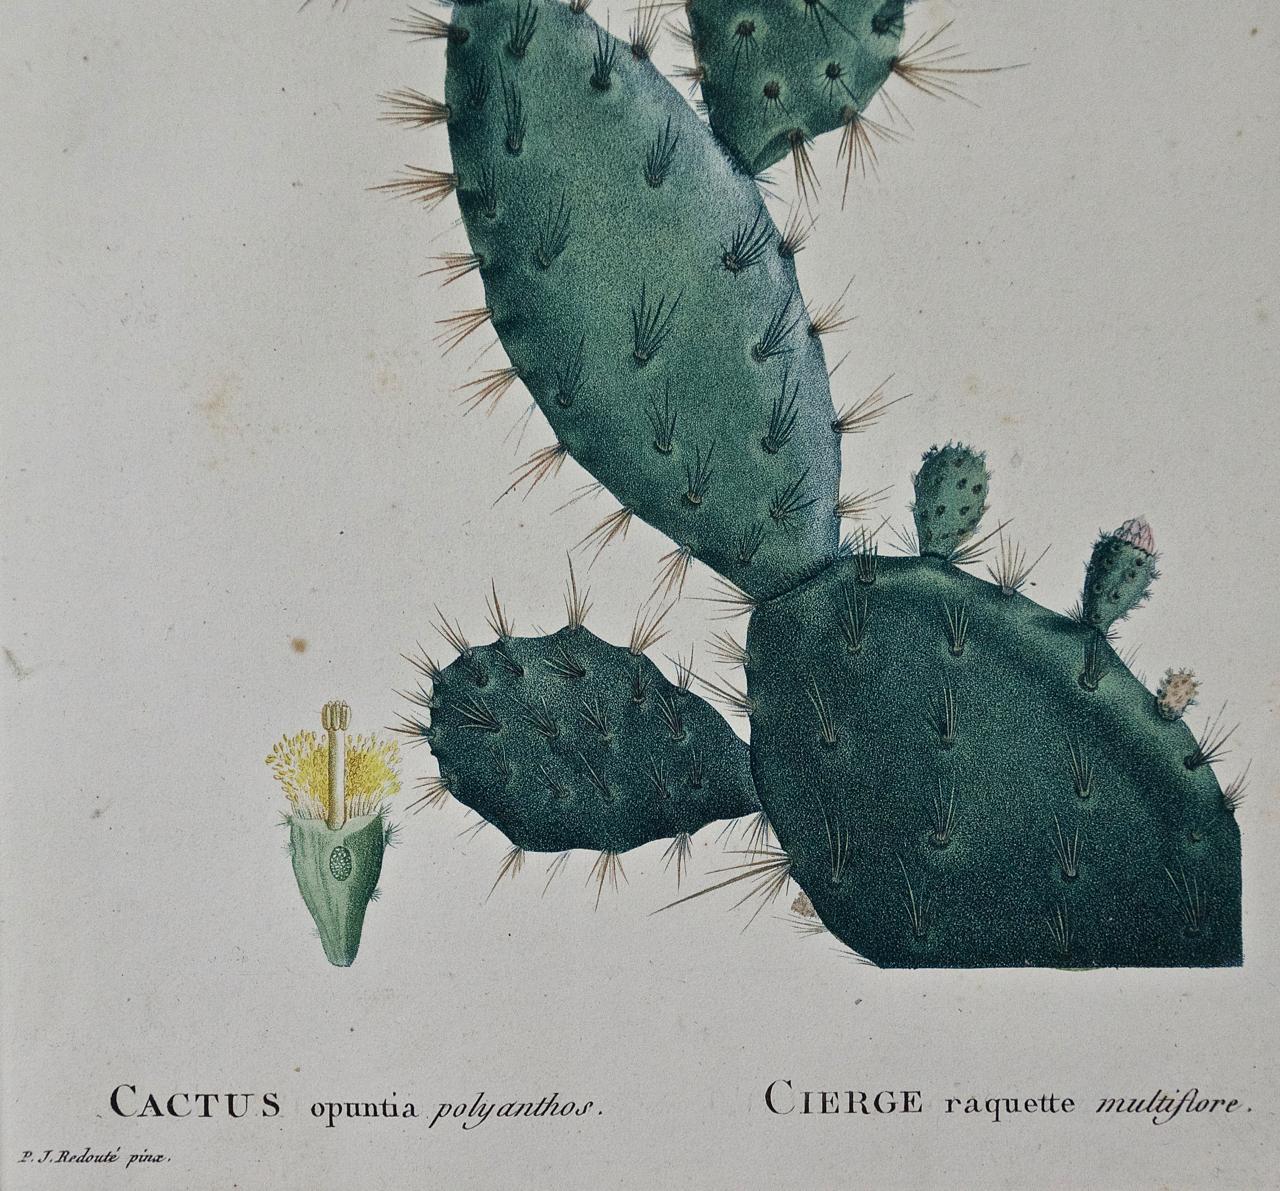 pierre cactus